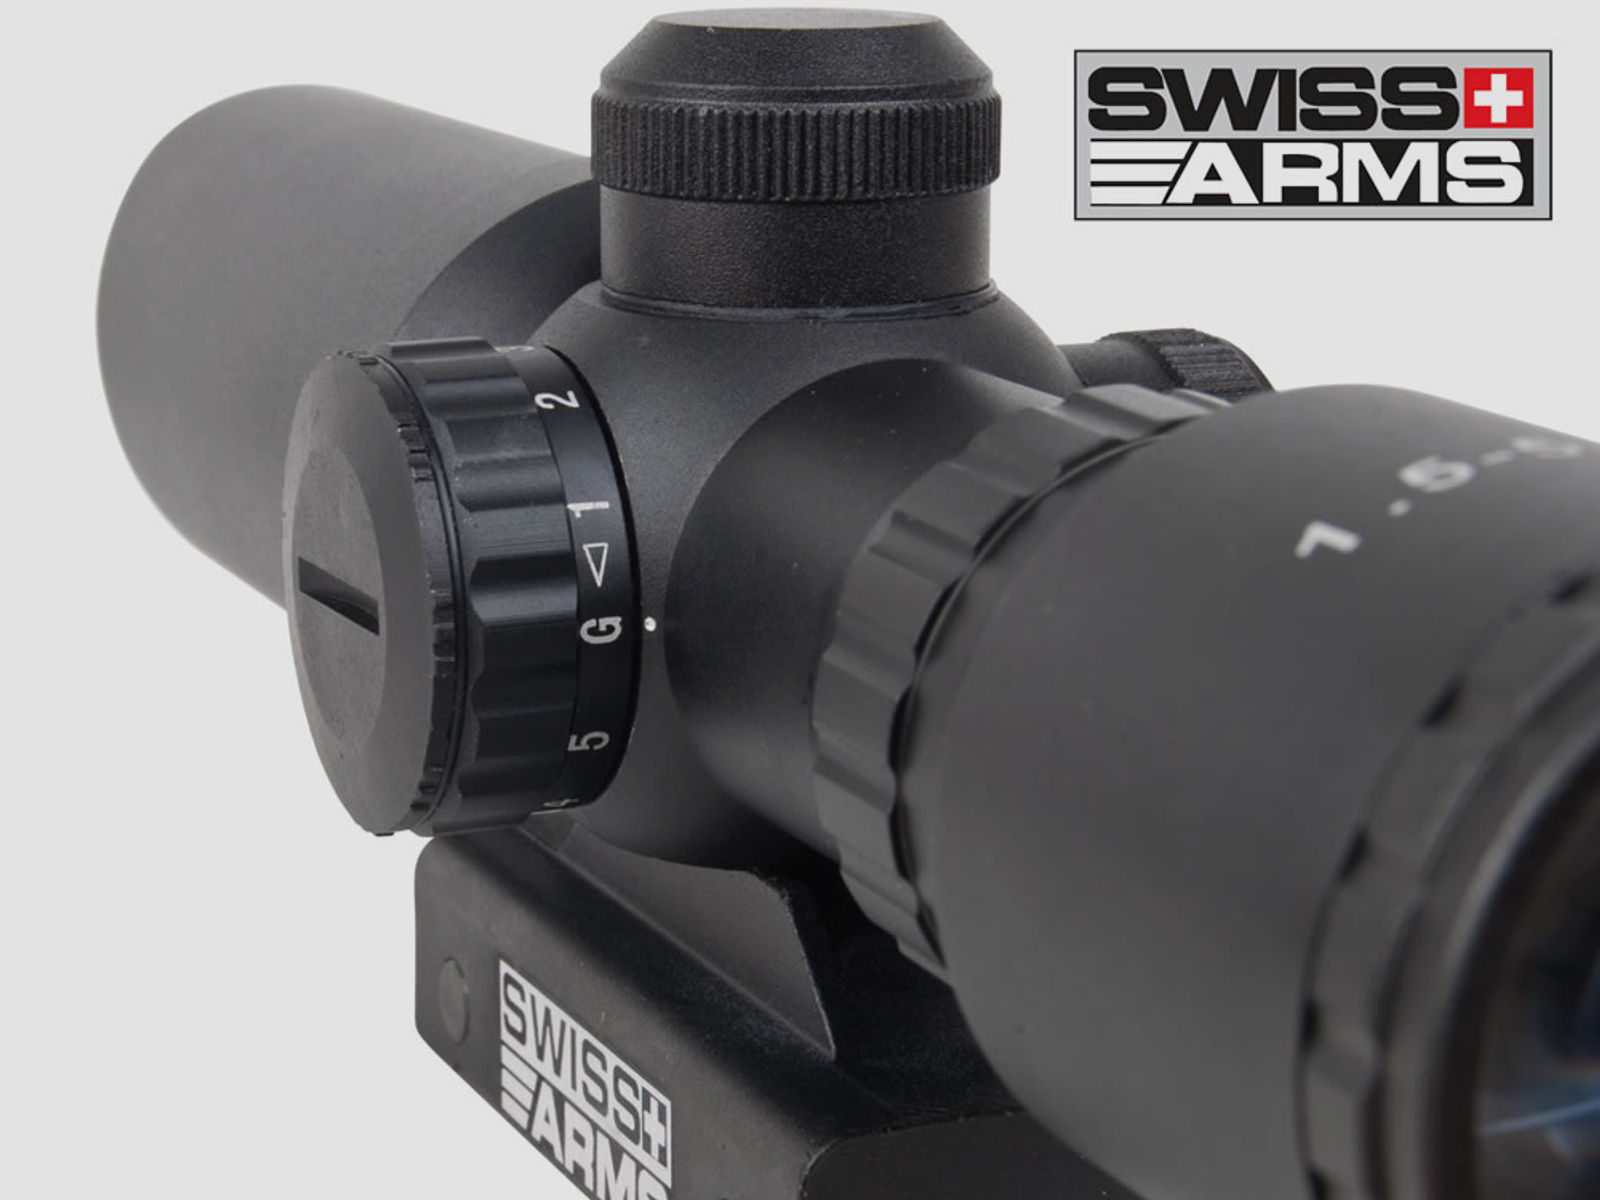 SWISS ARMS Zielfernrohr 1,5-5x32 IR, Mil-Dot-Absehen beleuchtet, inkl. Weavermontage